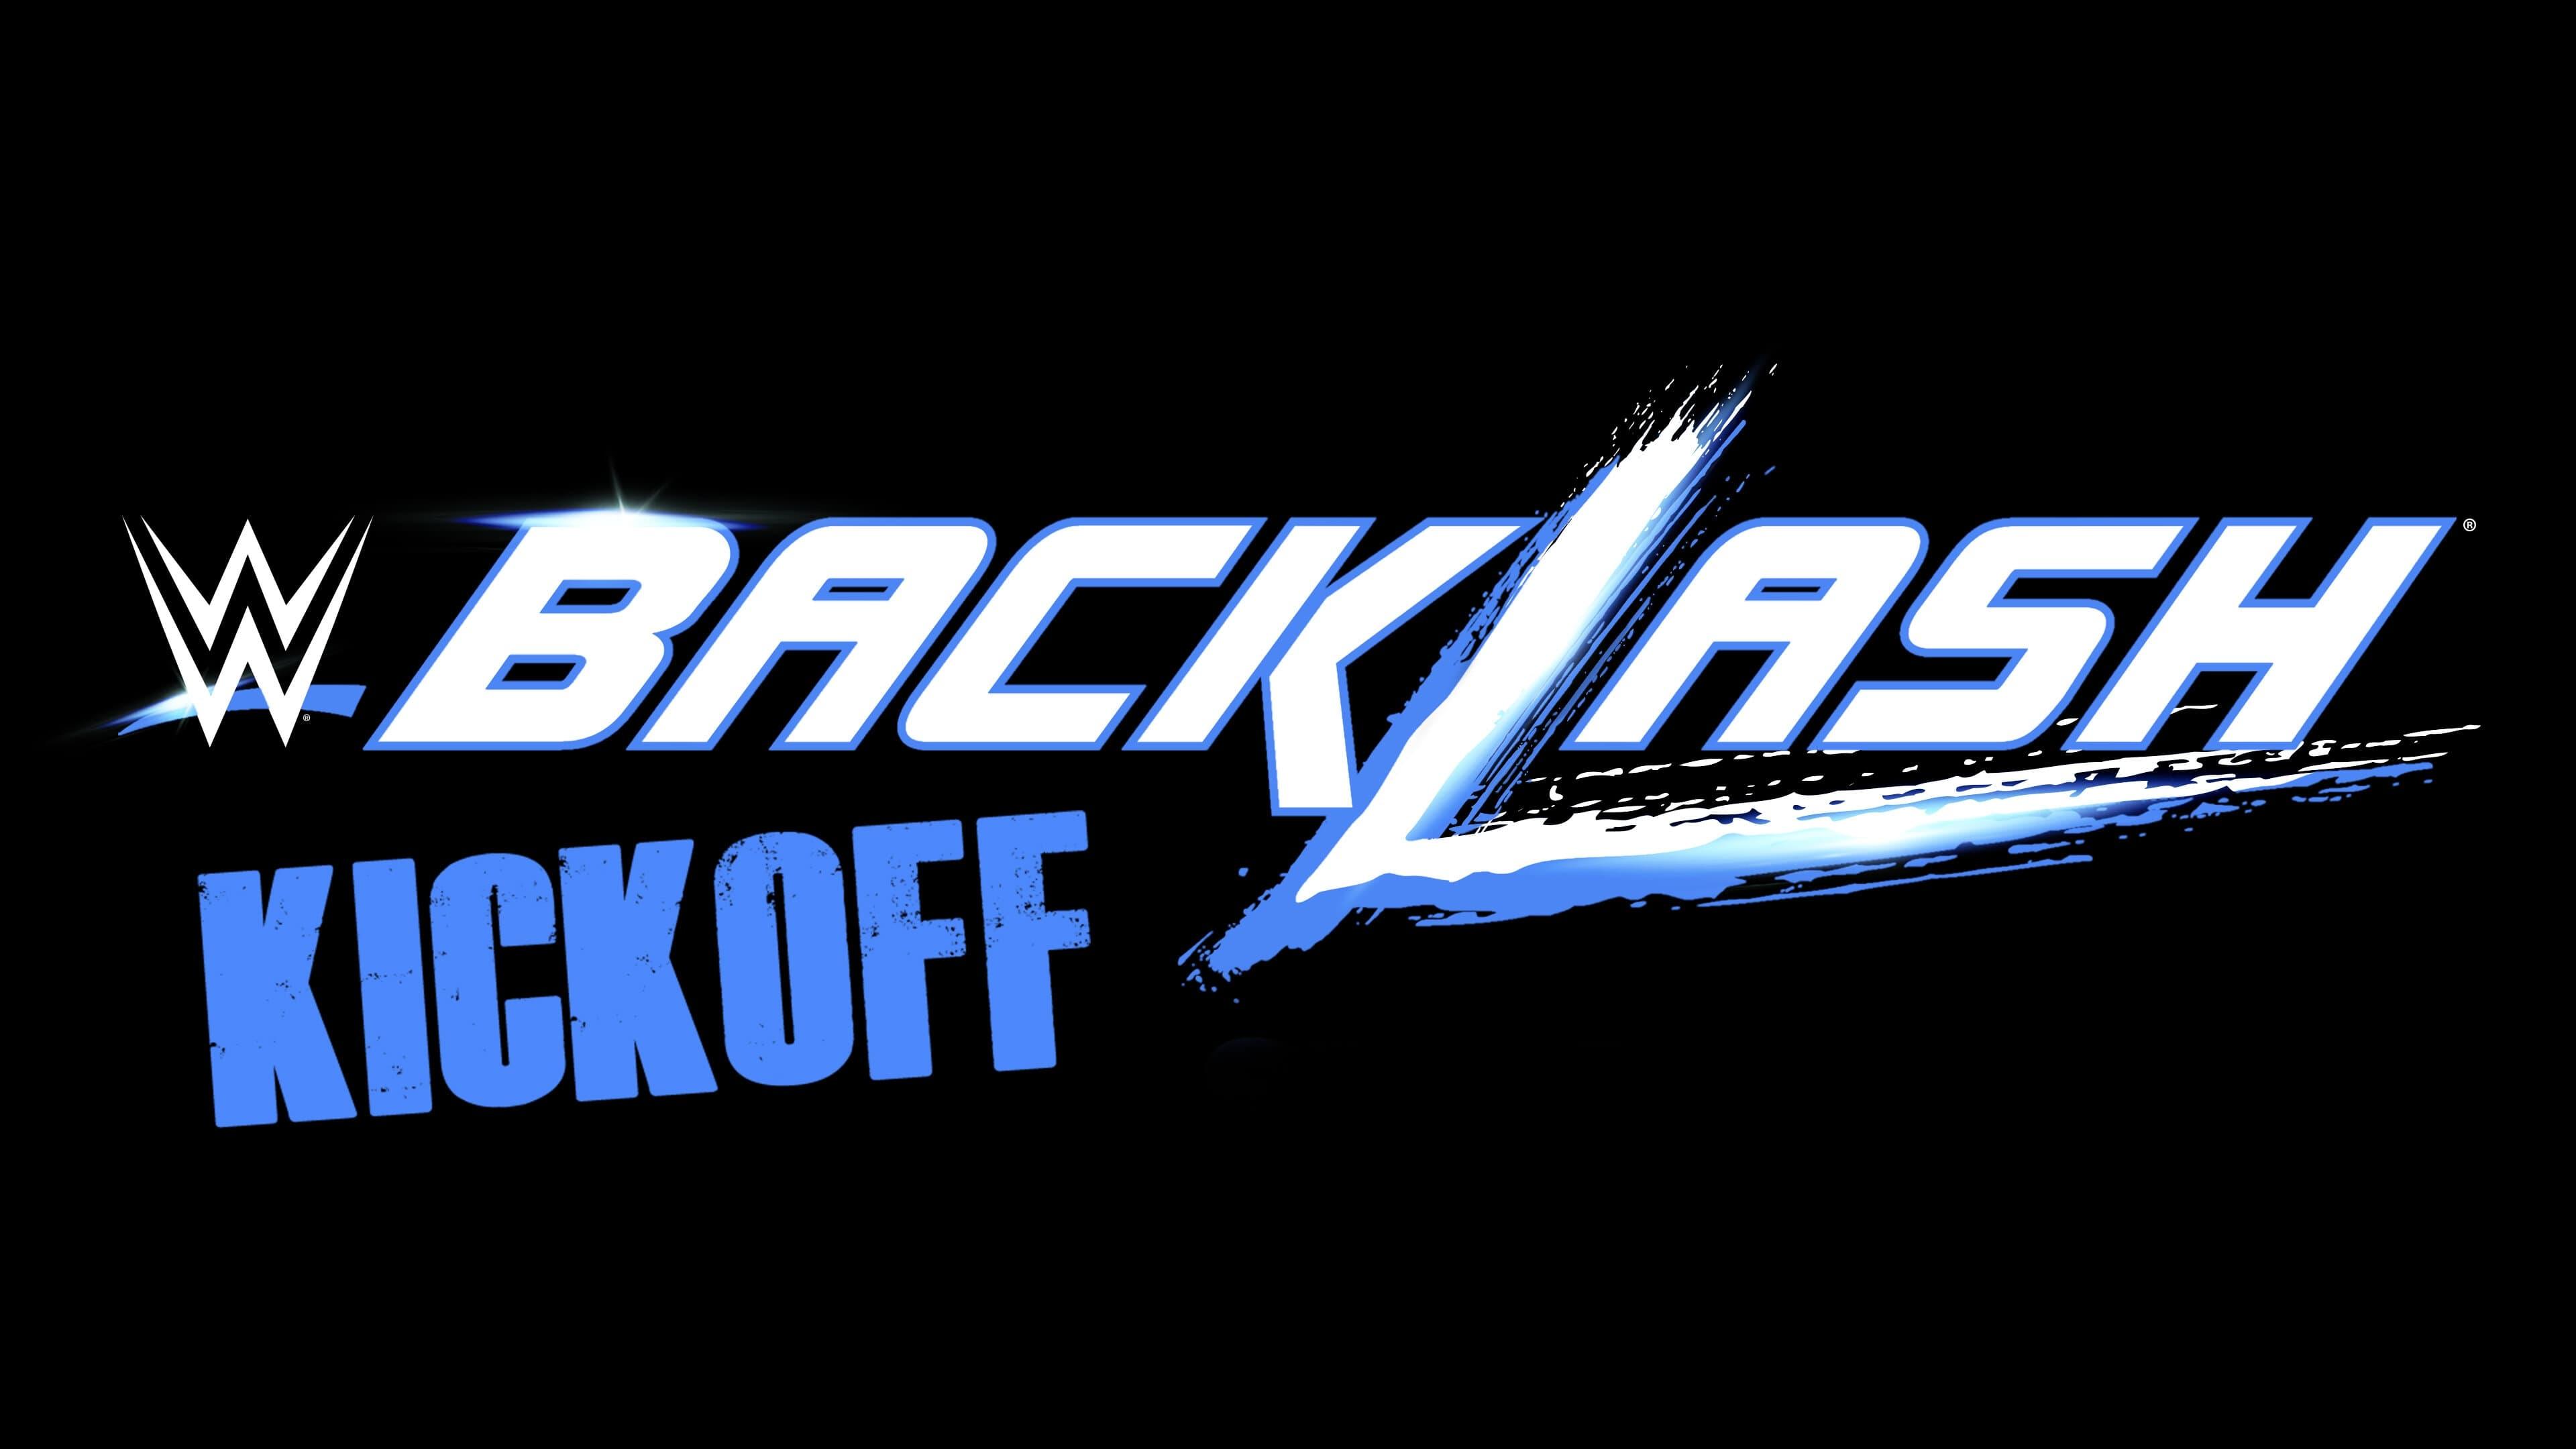 WWE Backlash 2016 Kickoff backdrop